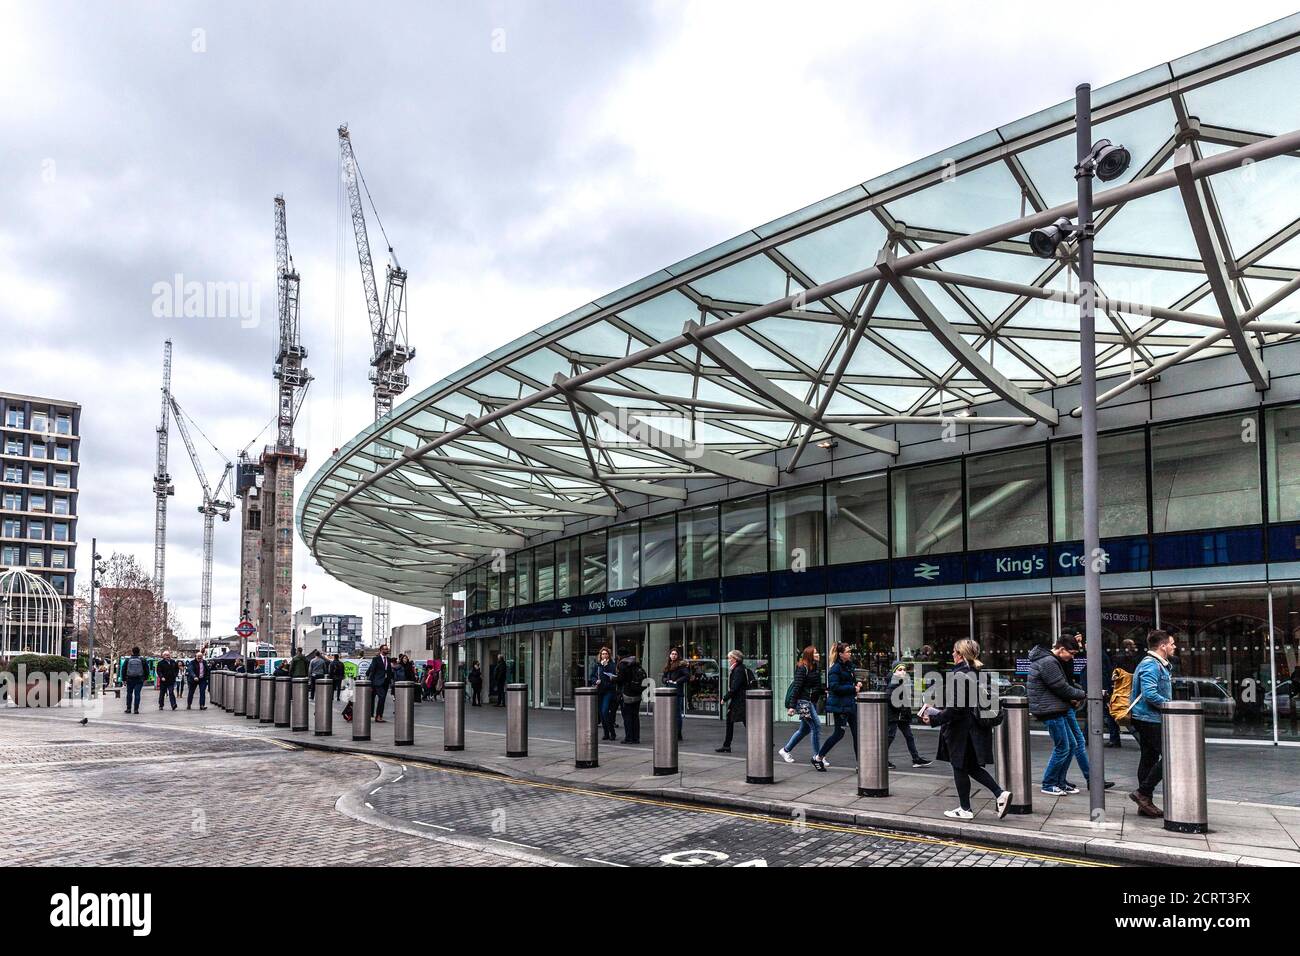 Un grande baldacchino in metallo e vetro fuori dalla stazione ferroviaria di King's Cross, Londra, Inghilterra, Regno Unito. Foto Stock